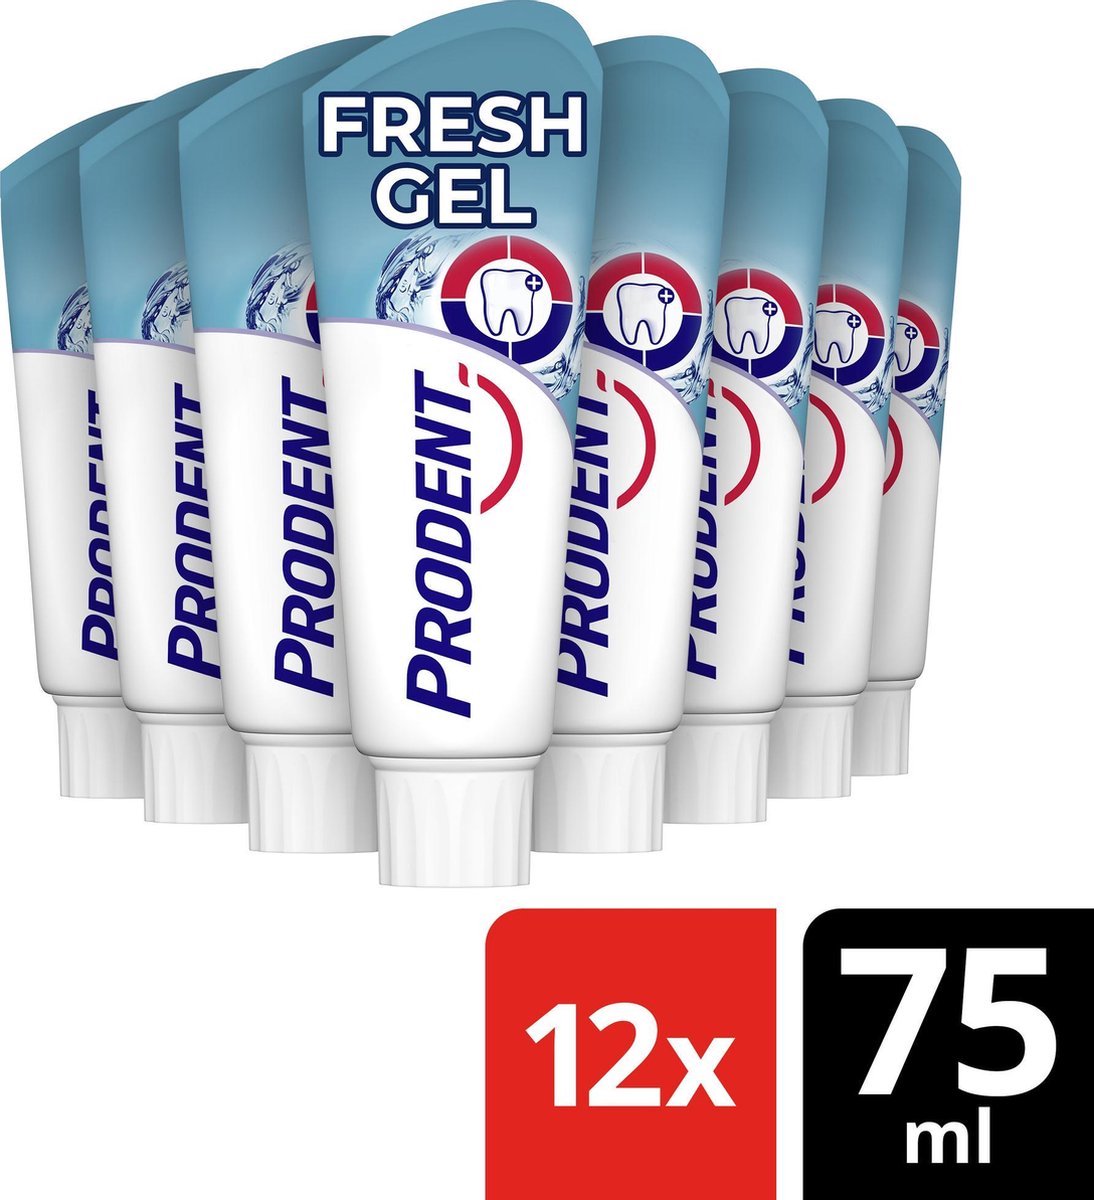 Prodent Freshgel - 75 ml - Tandpasta - 12 stuks - Voordeelverpakking